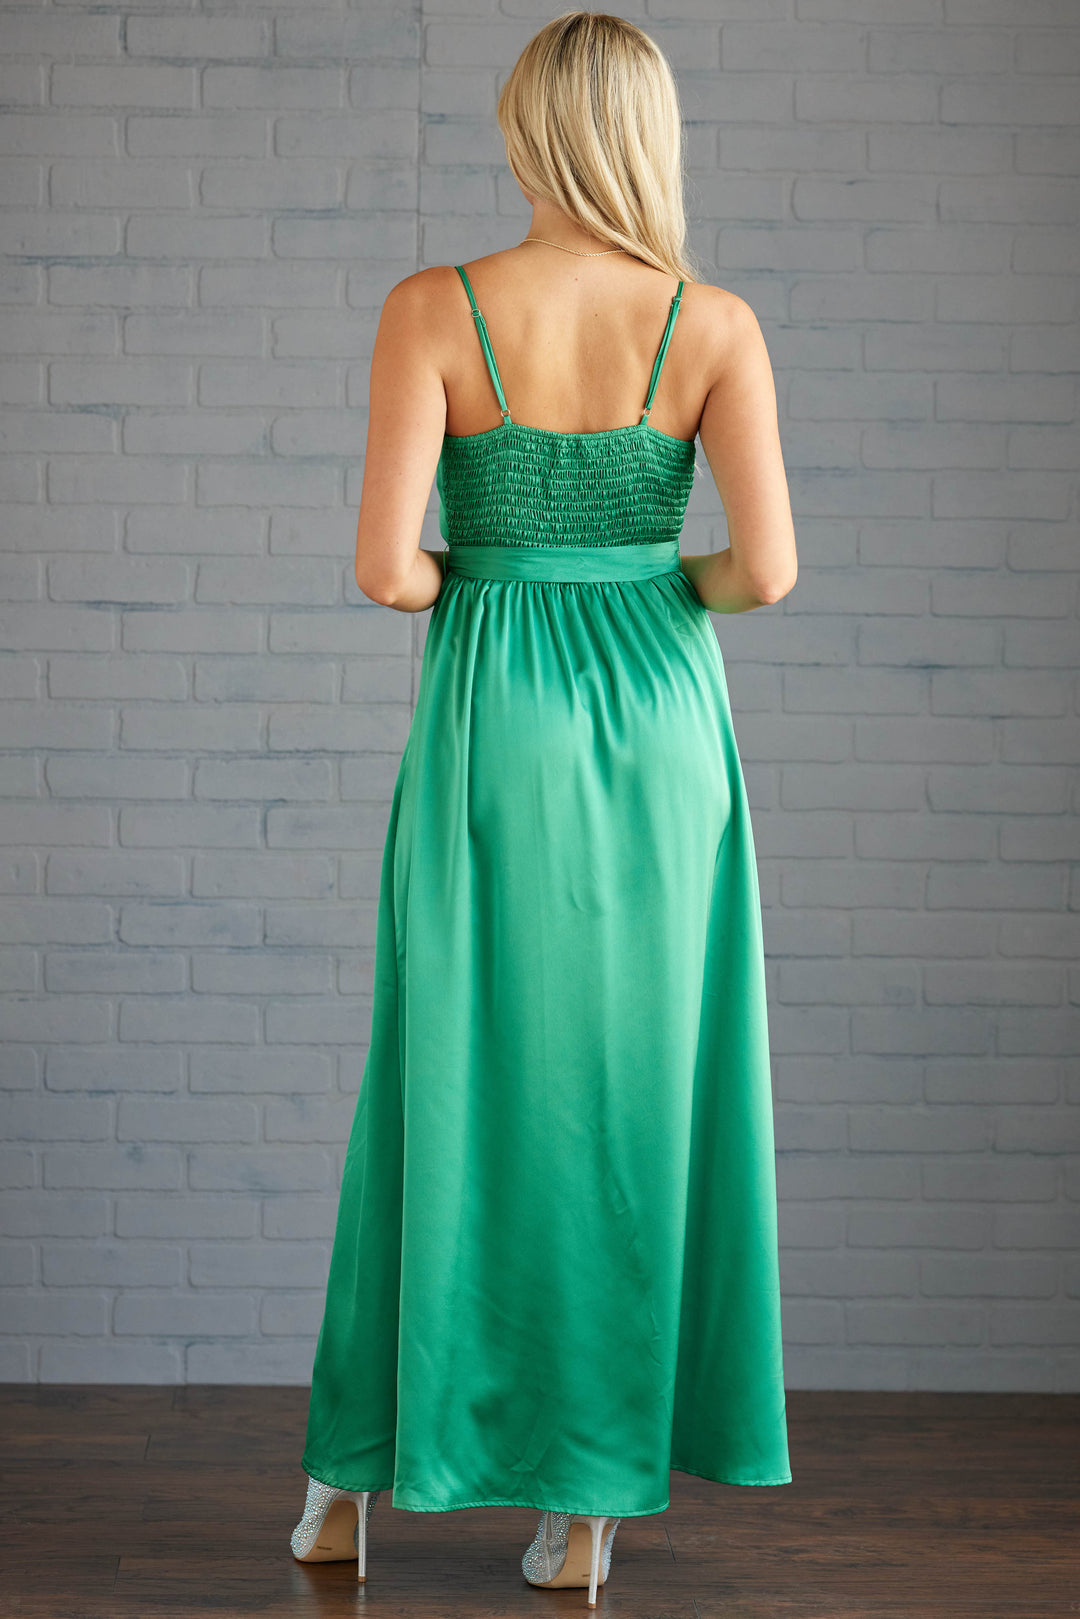 kelly green satin bridesmaid dresses